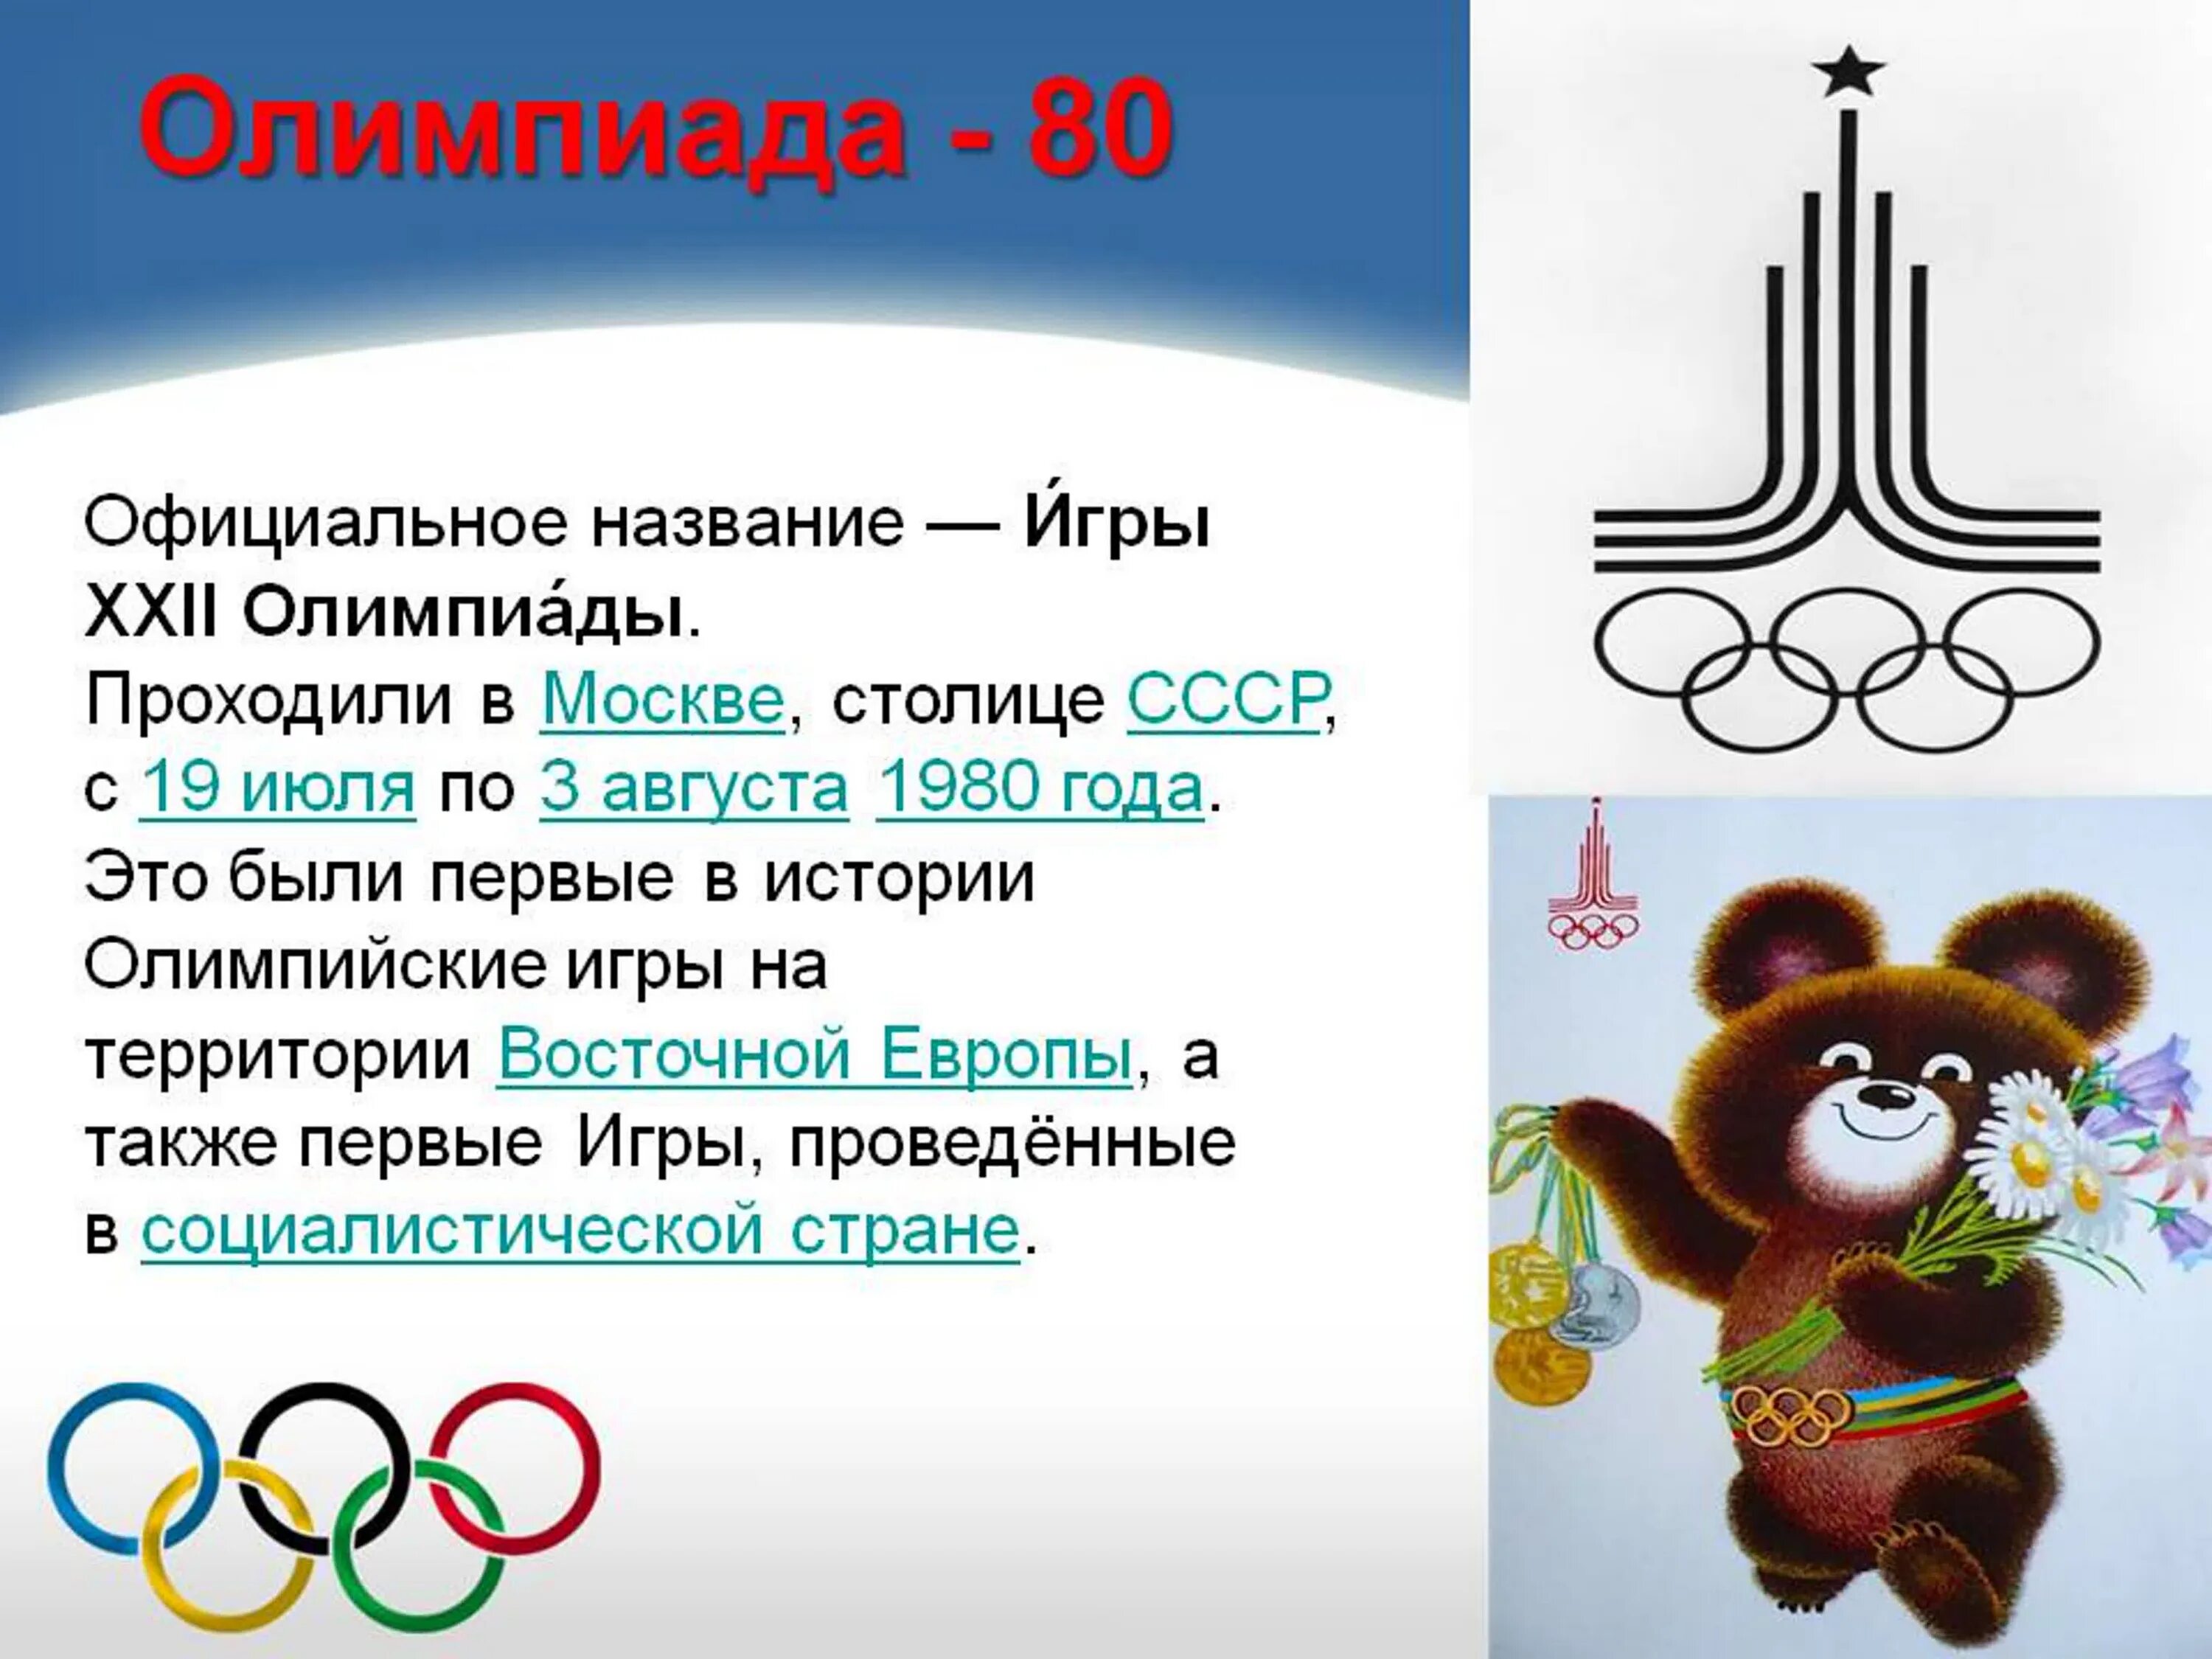 Открылись XXII летние Олимпийские игры в Москве (1980). Символ олимпиады 1980 Олимпийский мишка. Олимпийская символика 1980 года.